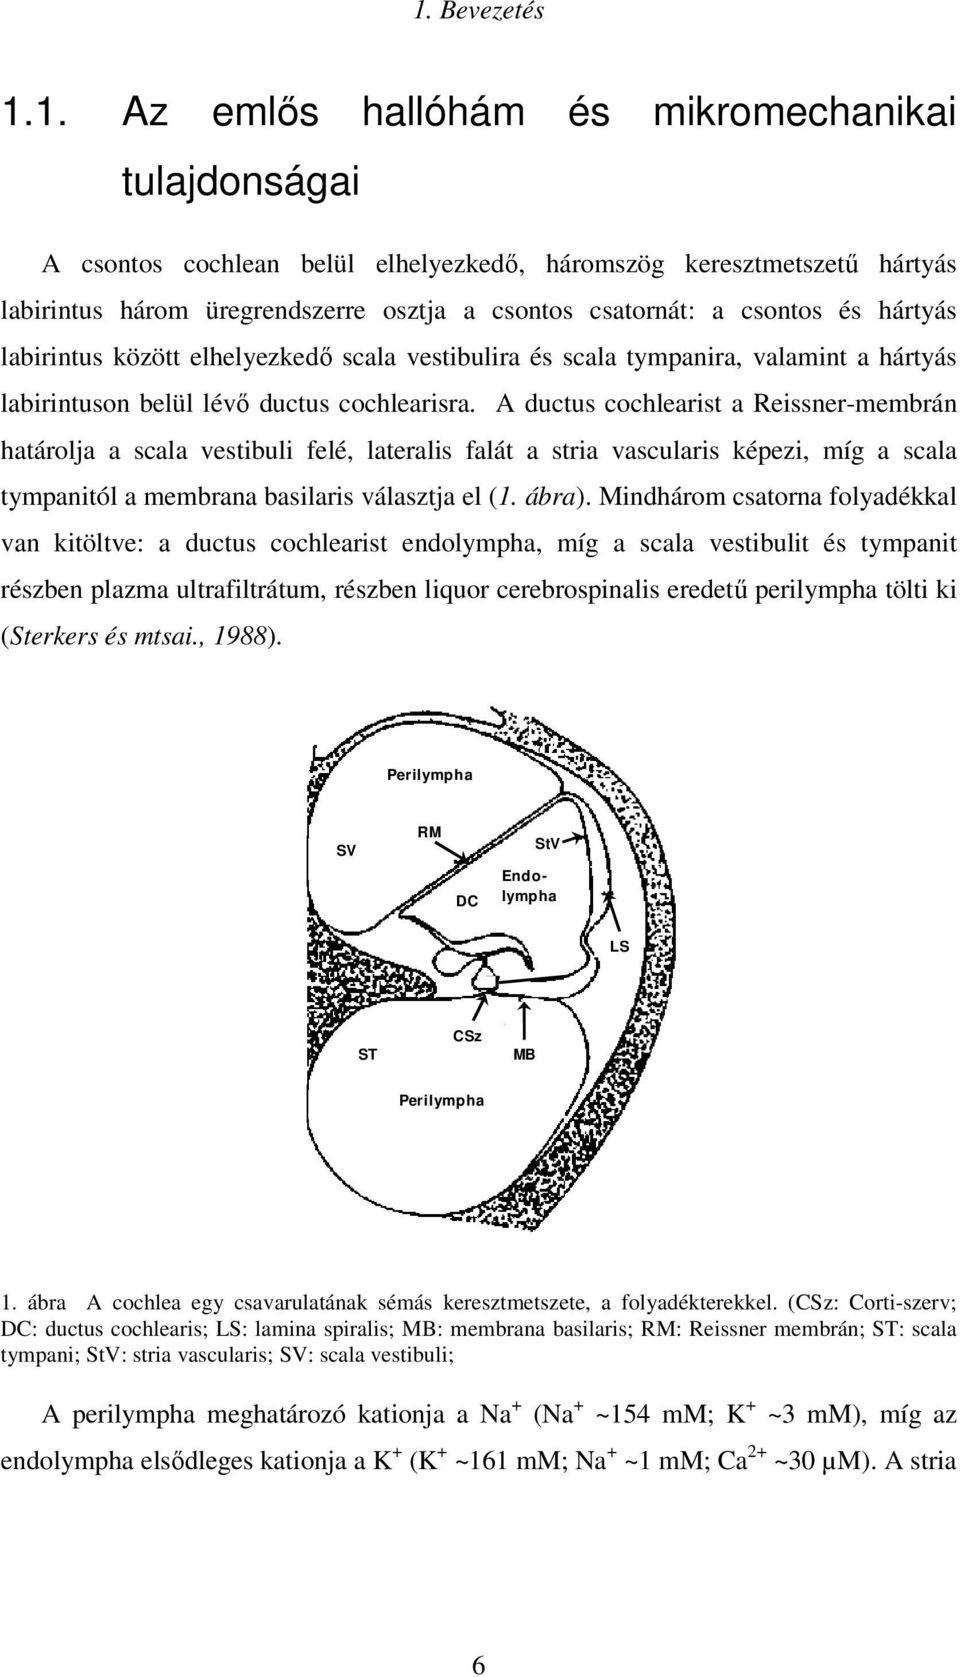 A ductus cochlearist a Reissner-membrán határolja a scala vestibuli felé, lateralis falát a stria vascularis képezi, míg a scala tympanitól a membrana basilaris választja el (1. ábra).